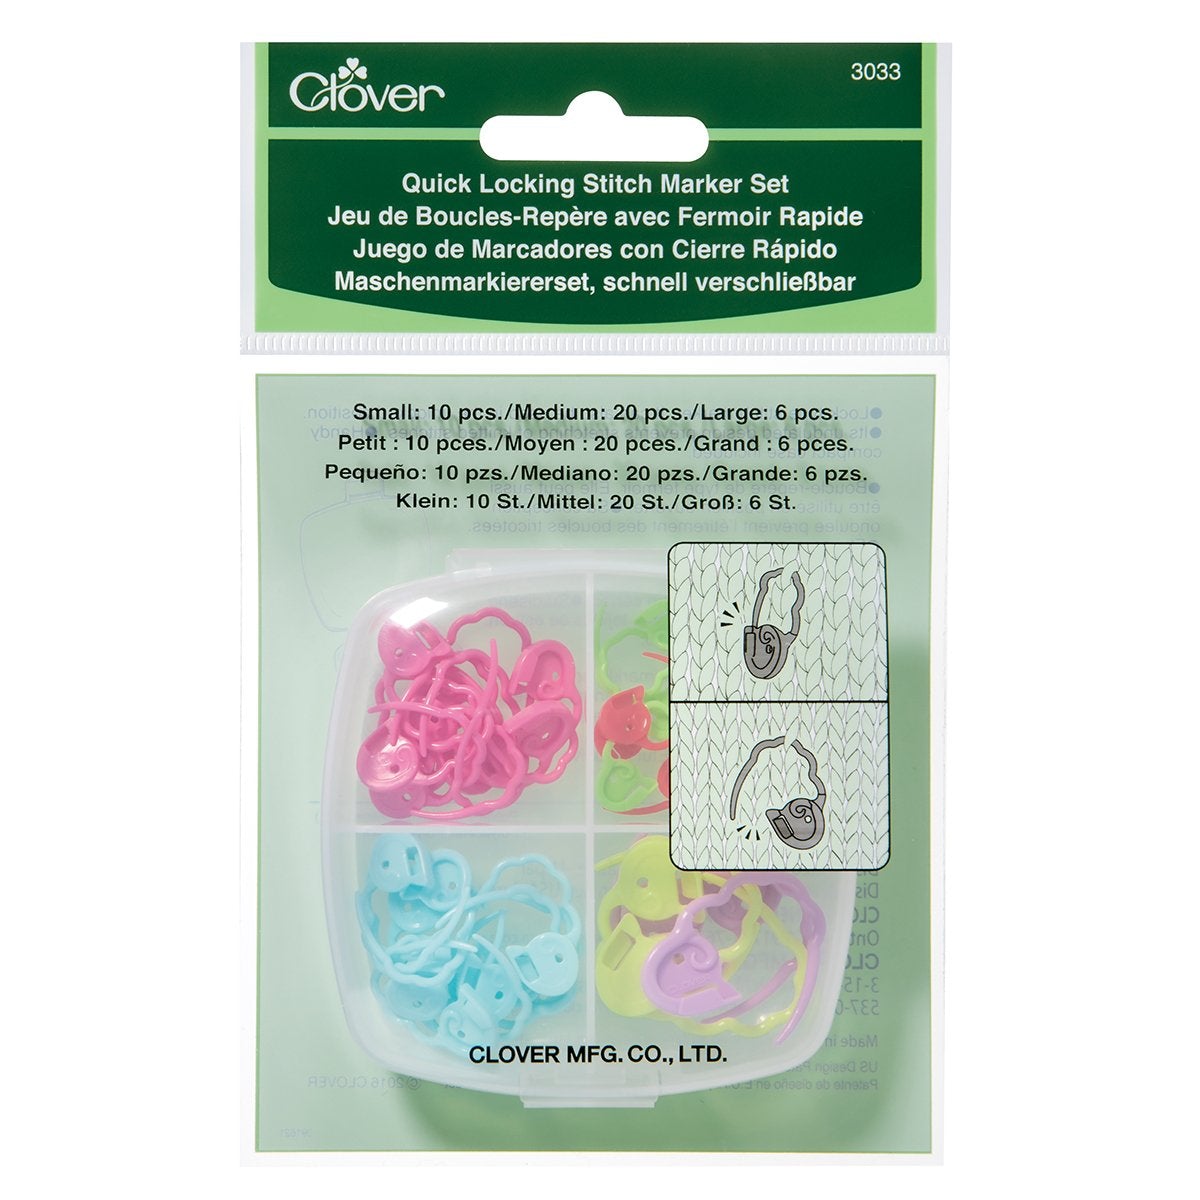 Clover 3033 Quick Locking Stitch Marker Set